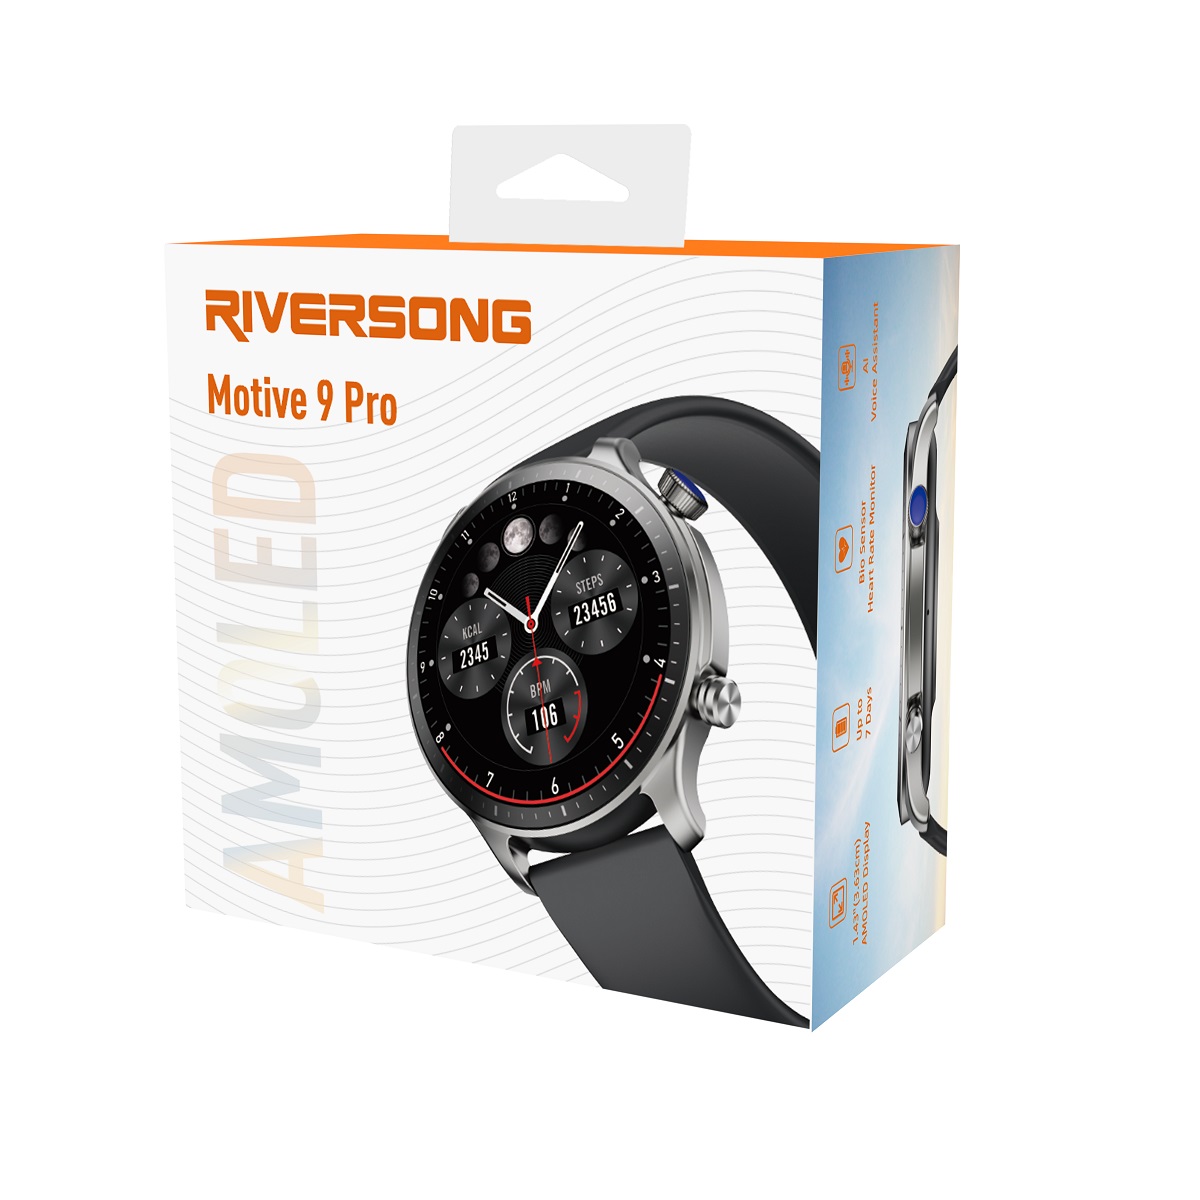 Elegancki zegarek mski wodoodporny elektroniczny sportowy z okrga tarcz smartwatch Riversong Motive 9 Pro szary SW901 / 5